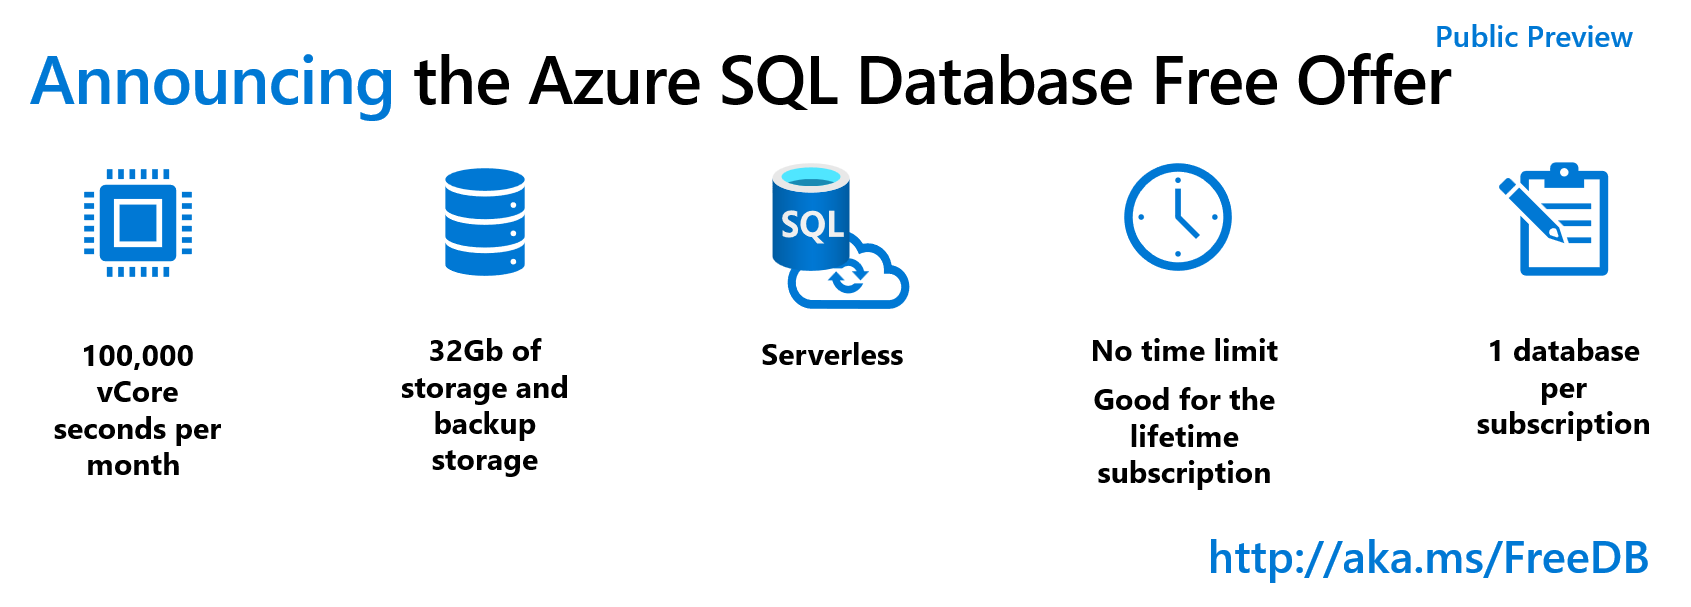 New Azure SQL Database free offer